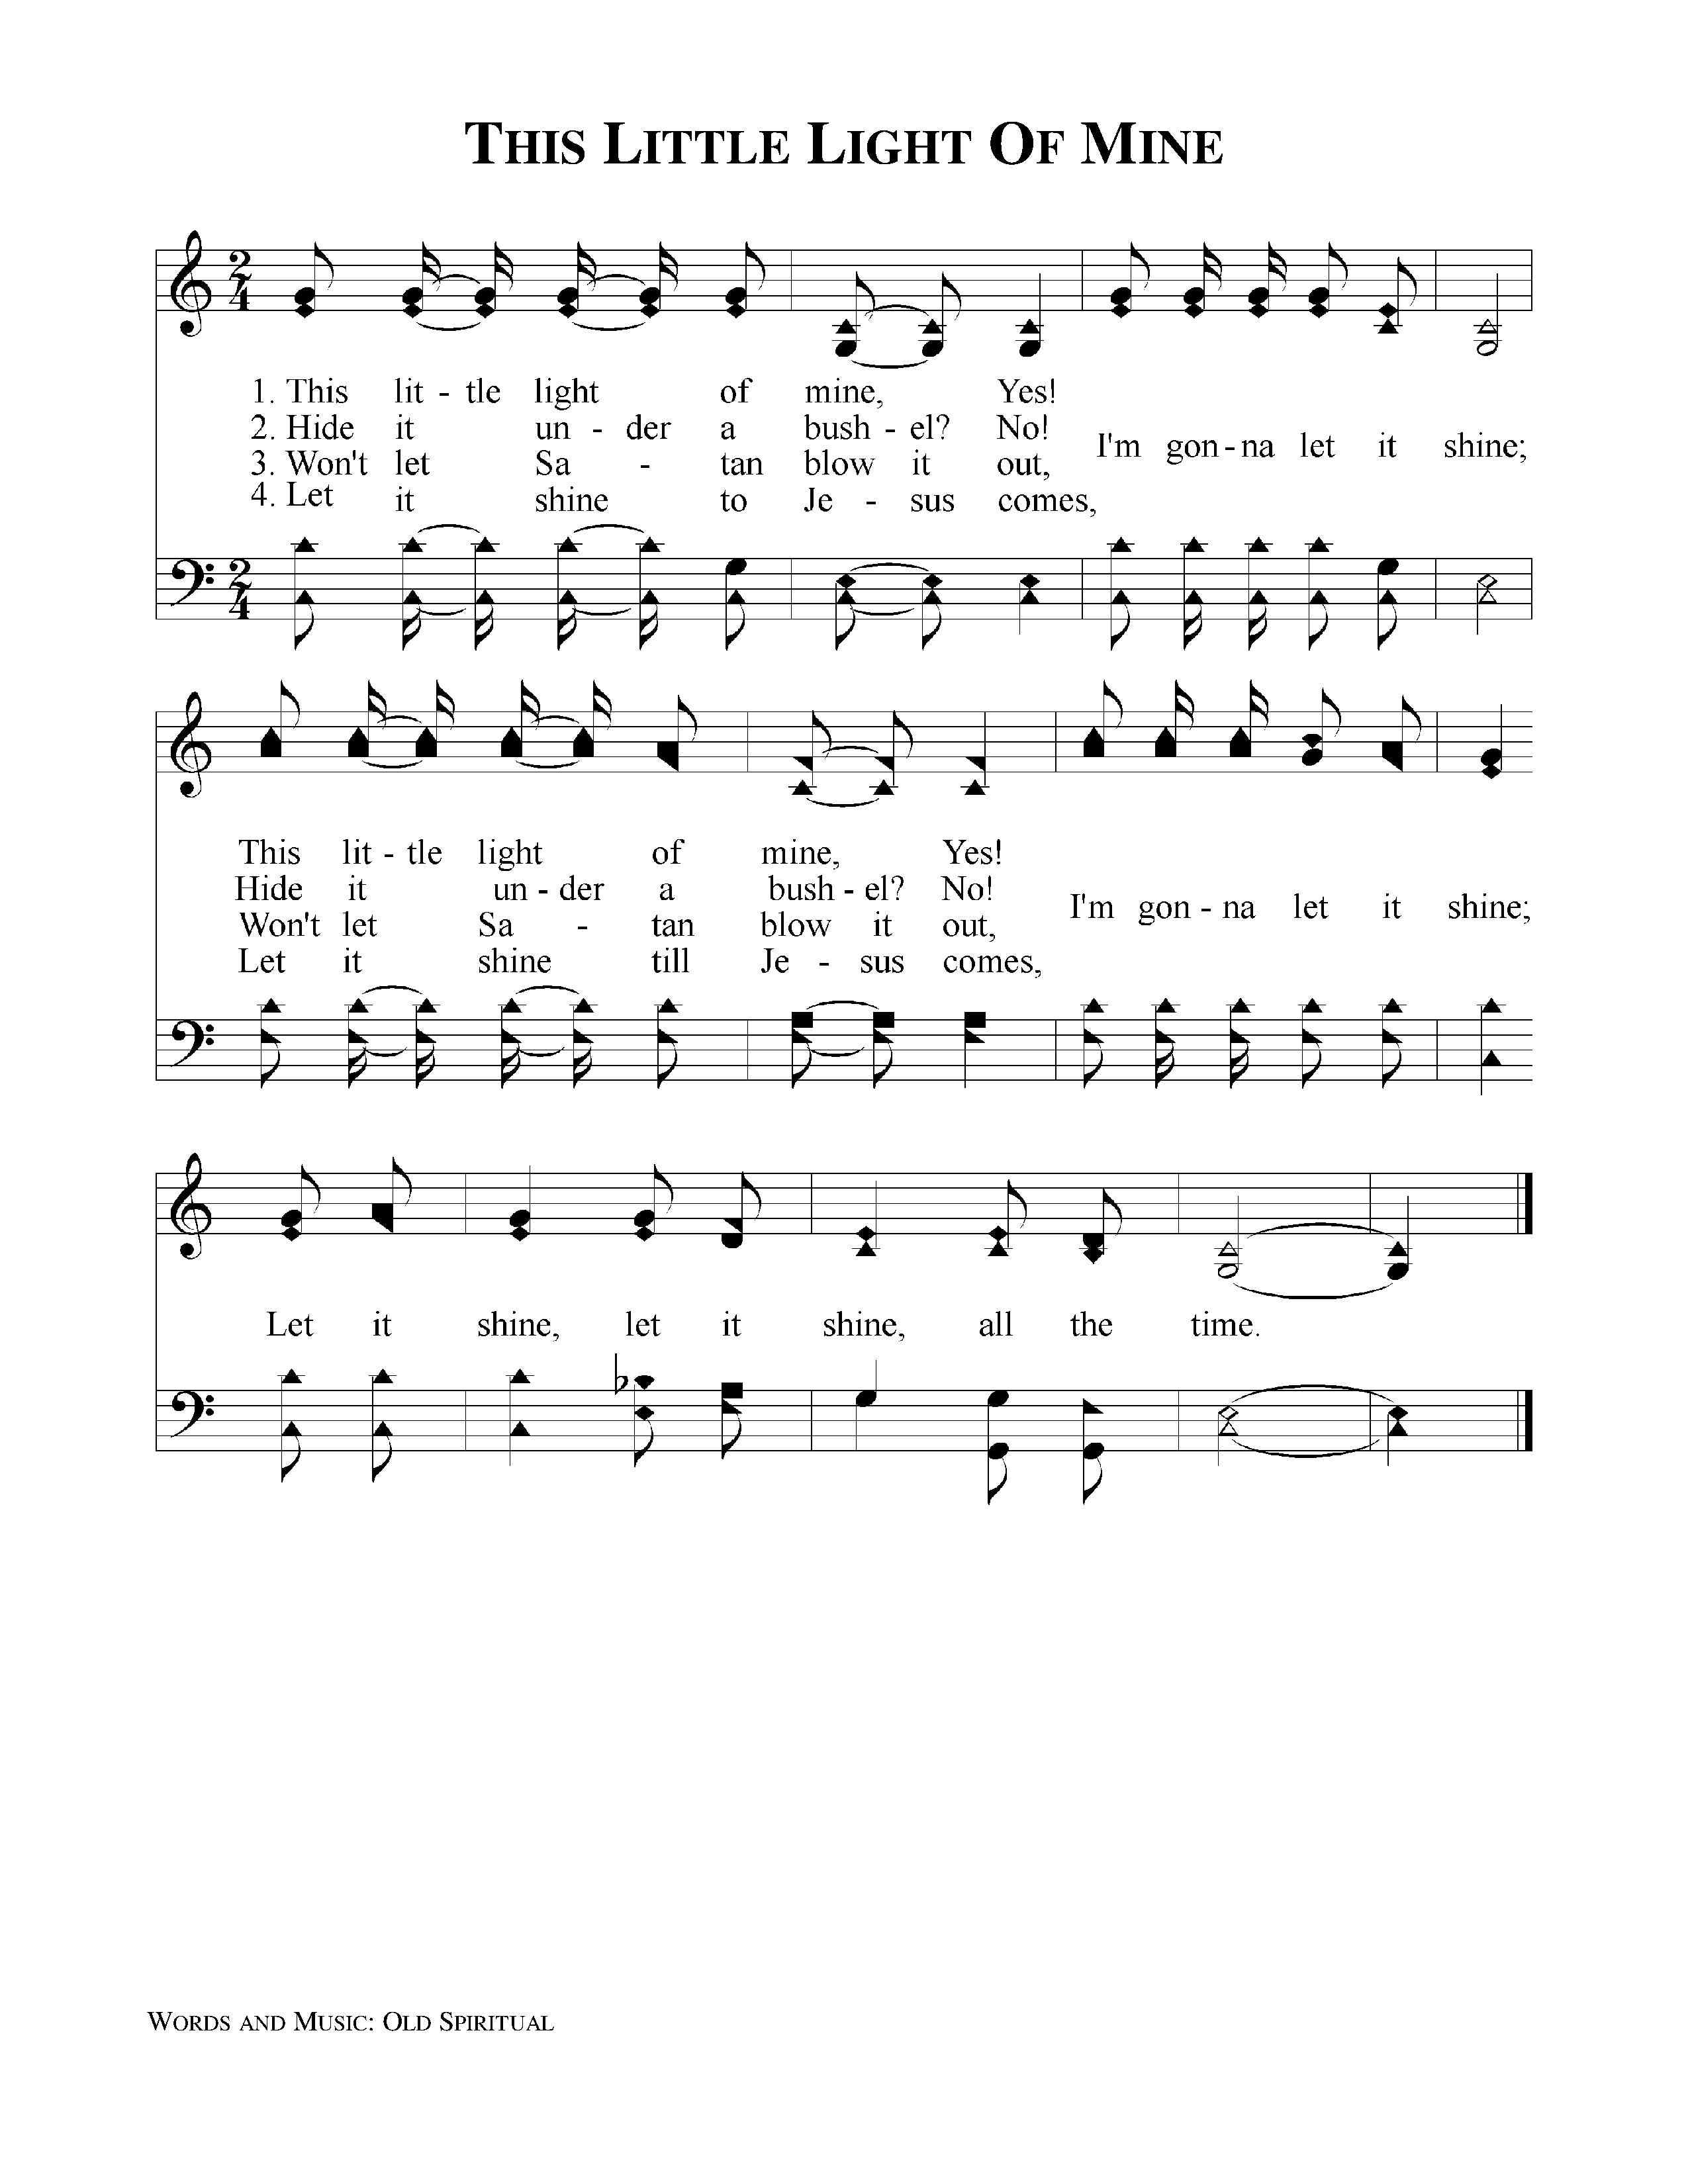 All American Church Hymnal Pdf